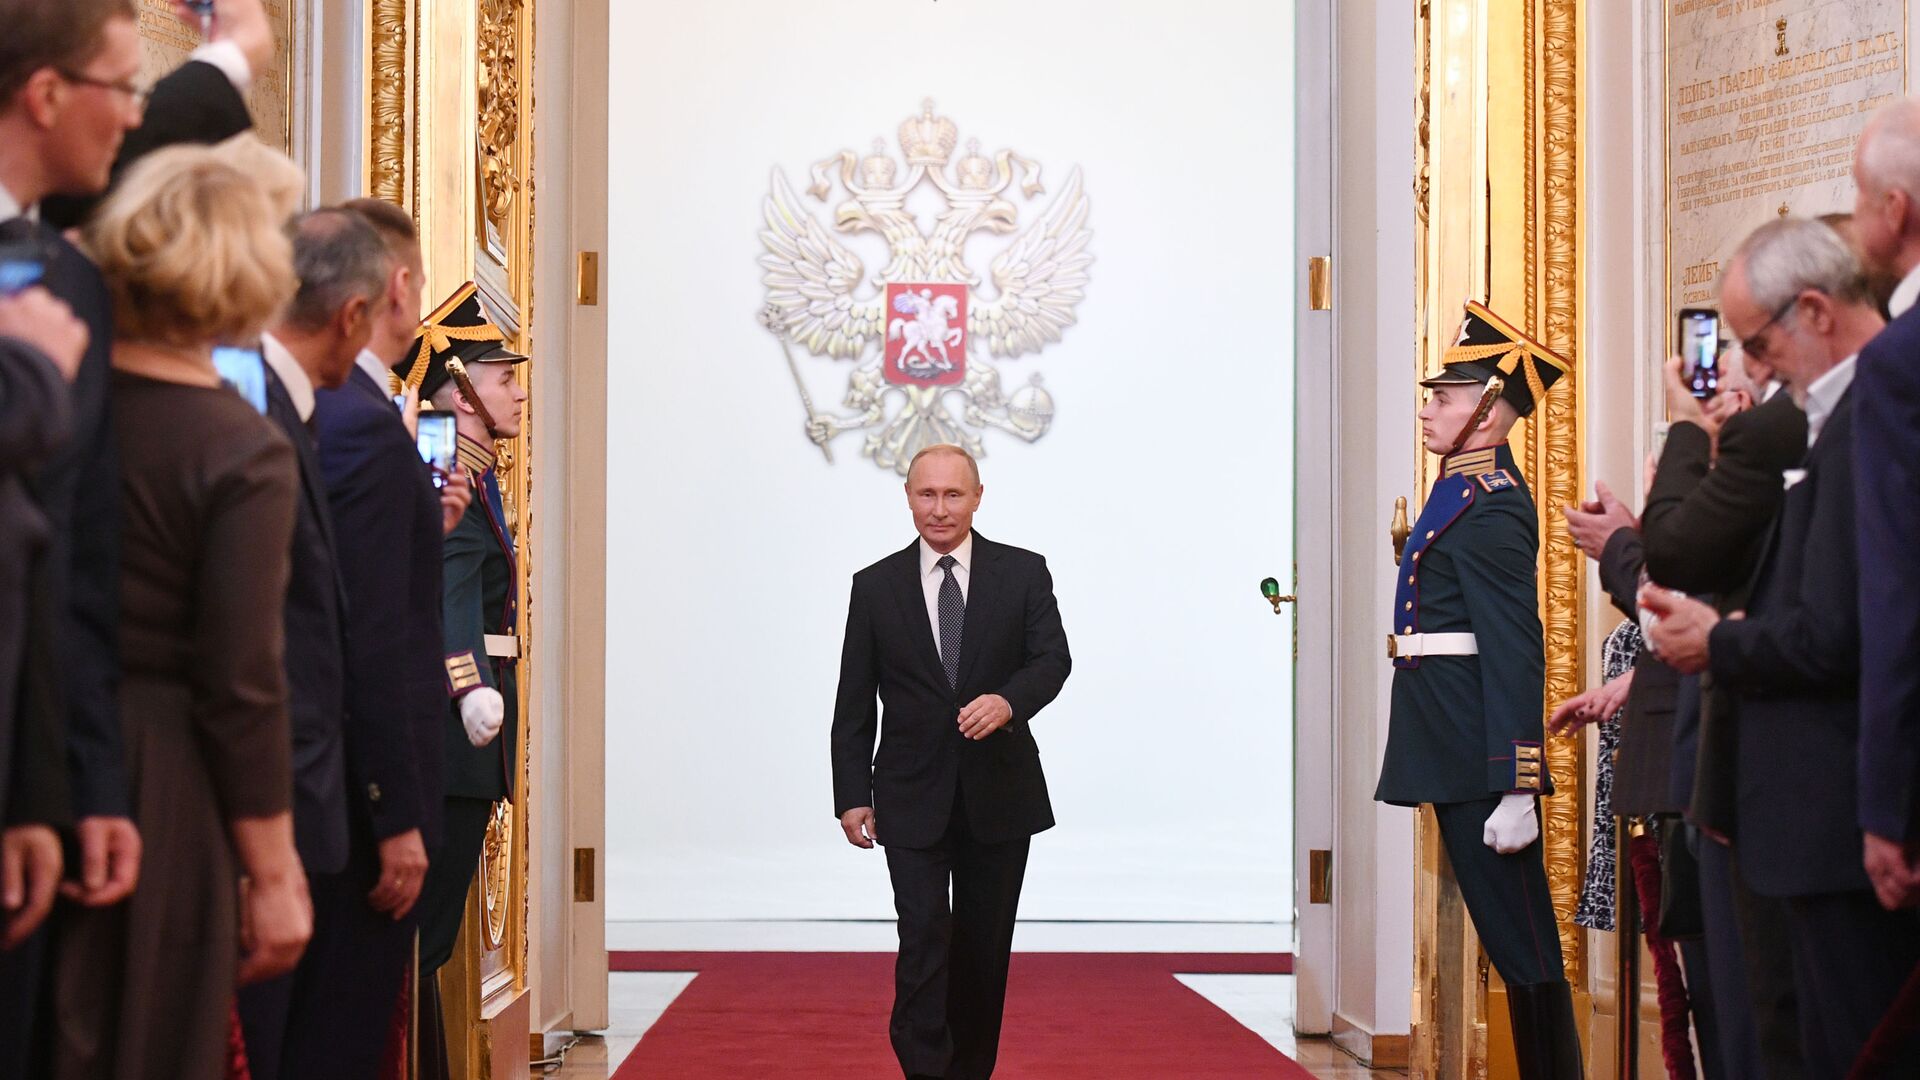 Председник Русије Владимир Путин на церемонији инаугурације у Кремљу - Sputnik Србија, 1920, 27.05.2021